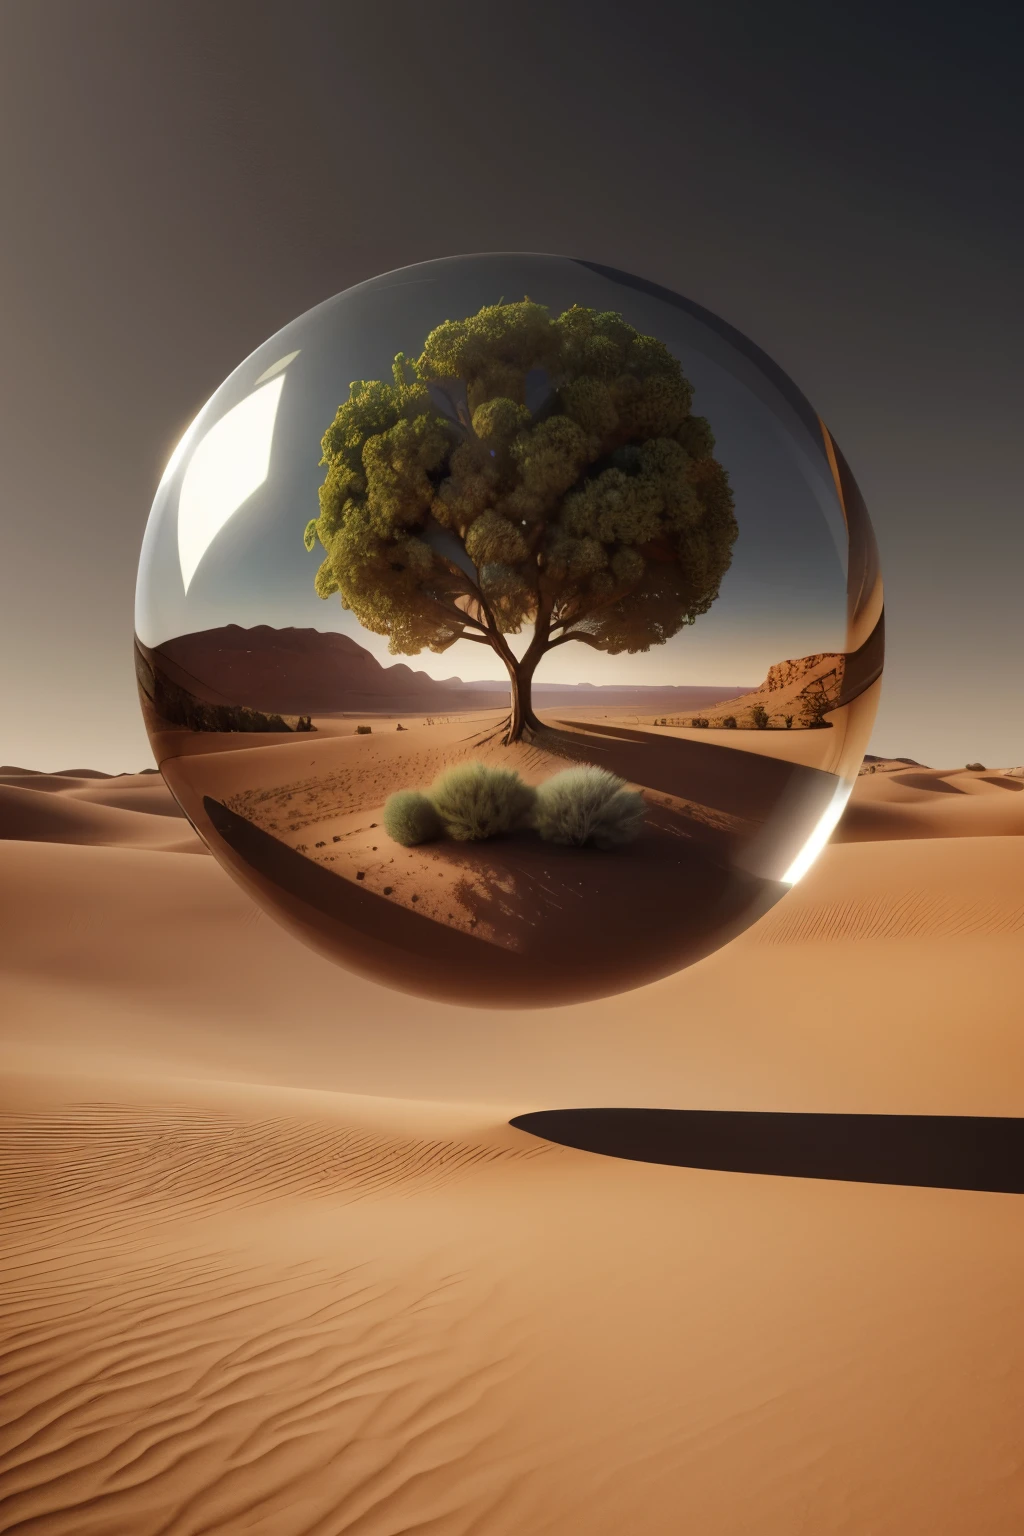 沙漠景观中玻璃球内一棵树的阿拉夫图像, 球内的生命之树, 超现实主义数字艺术作品, 超现实主义 8k, 超现实数字艺术, 超现实主义艺术, 超现实 3D 渲染, 3d 渲染数字艺术, 马克·亚当斯, 超现实主义概念艺术, 3D 渲染 beeple, 风格化的数字艺术, 4k 超现实主义